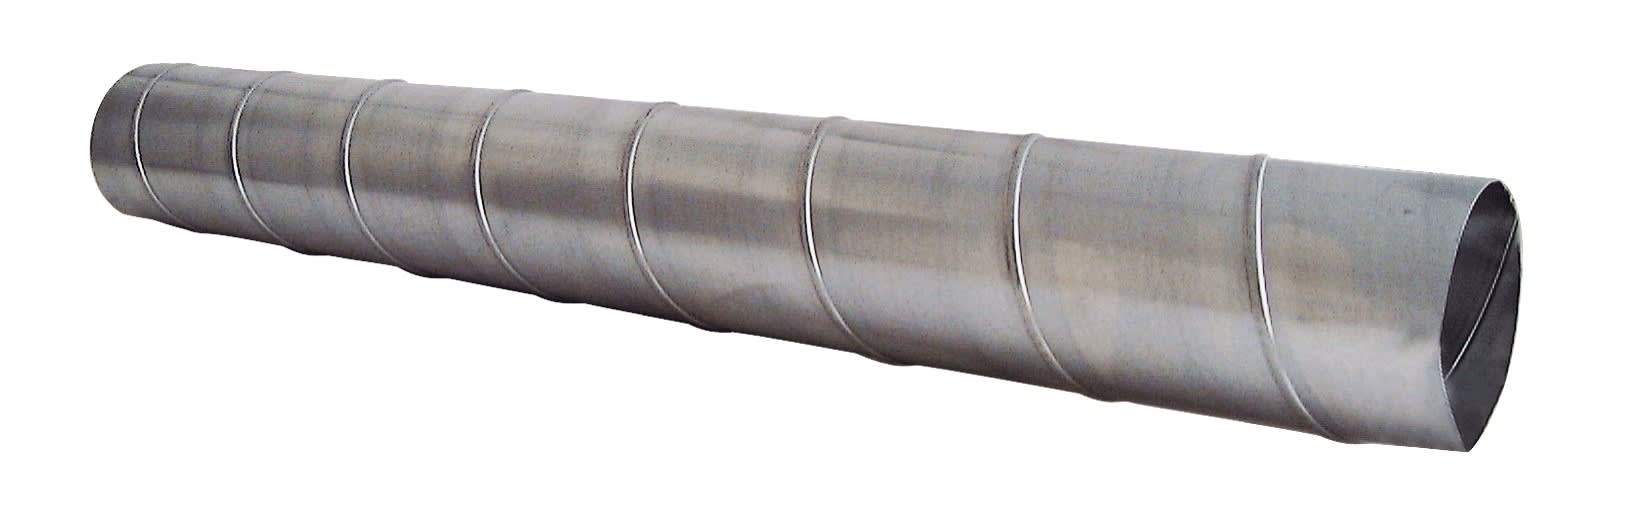 S&P - Conduit spirale acier galvanise, D 125 mm, longueur 3 m